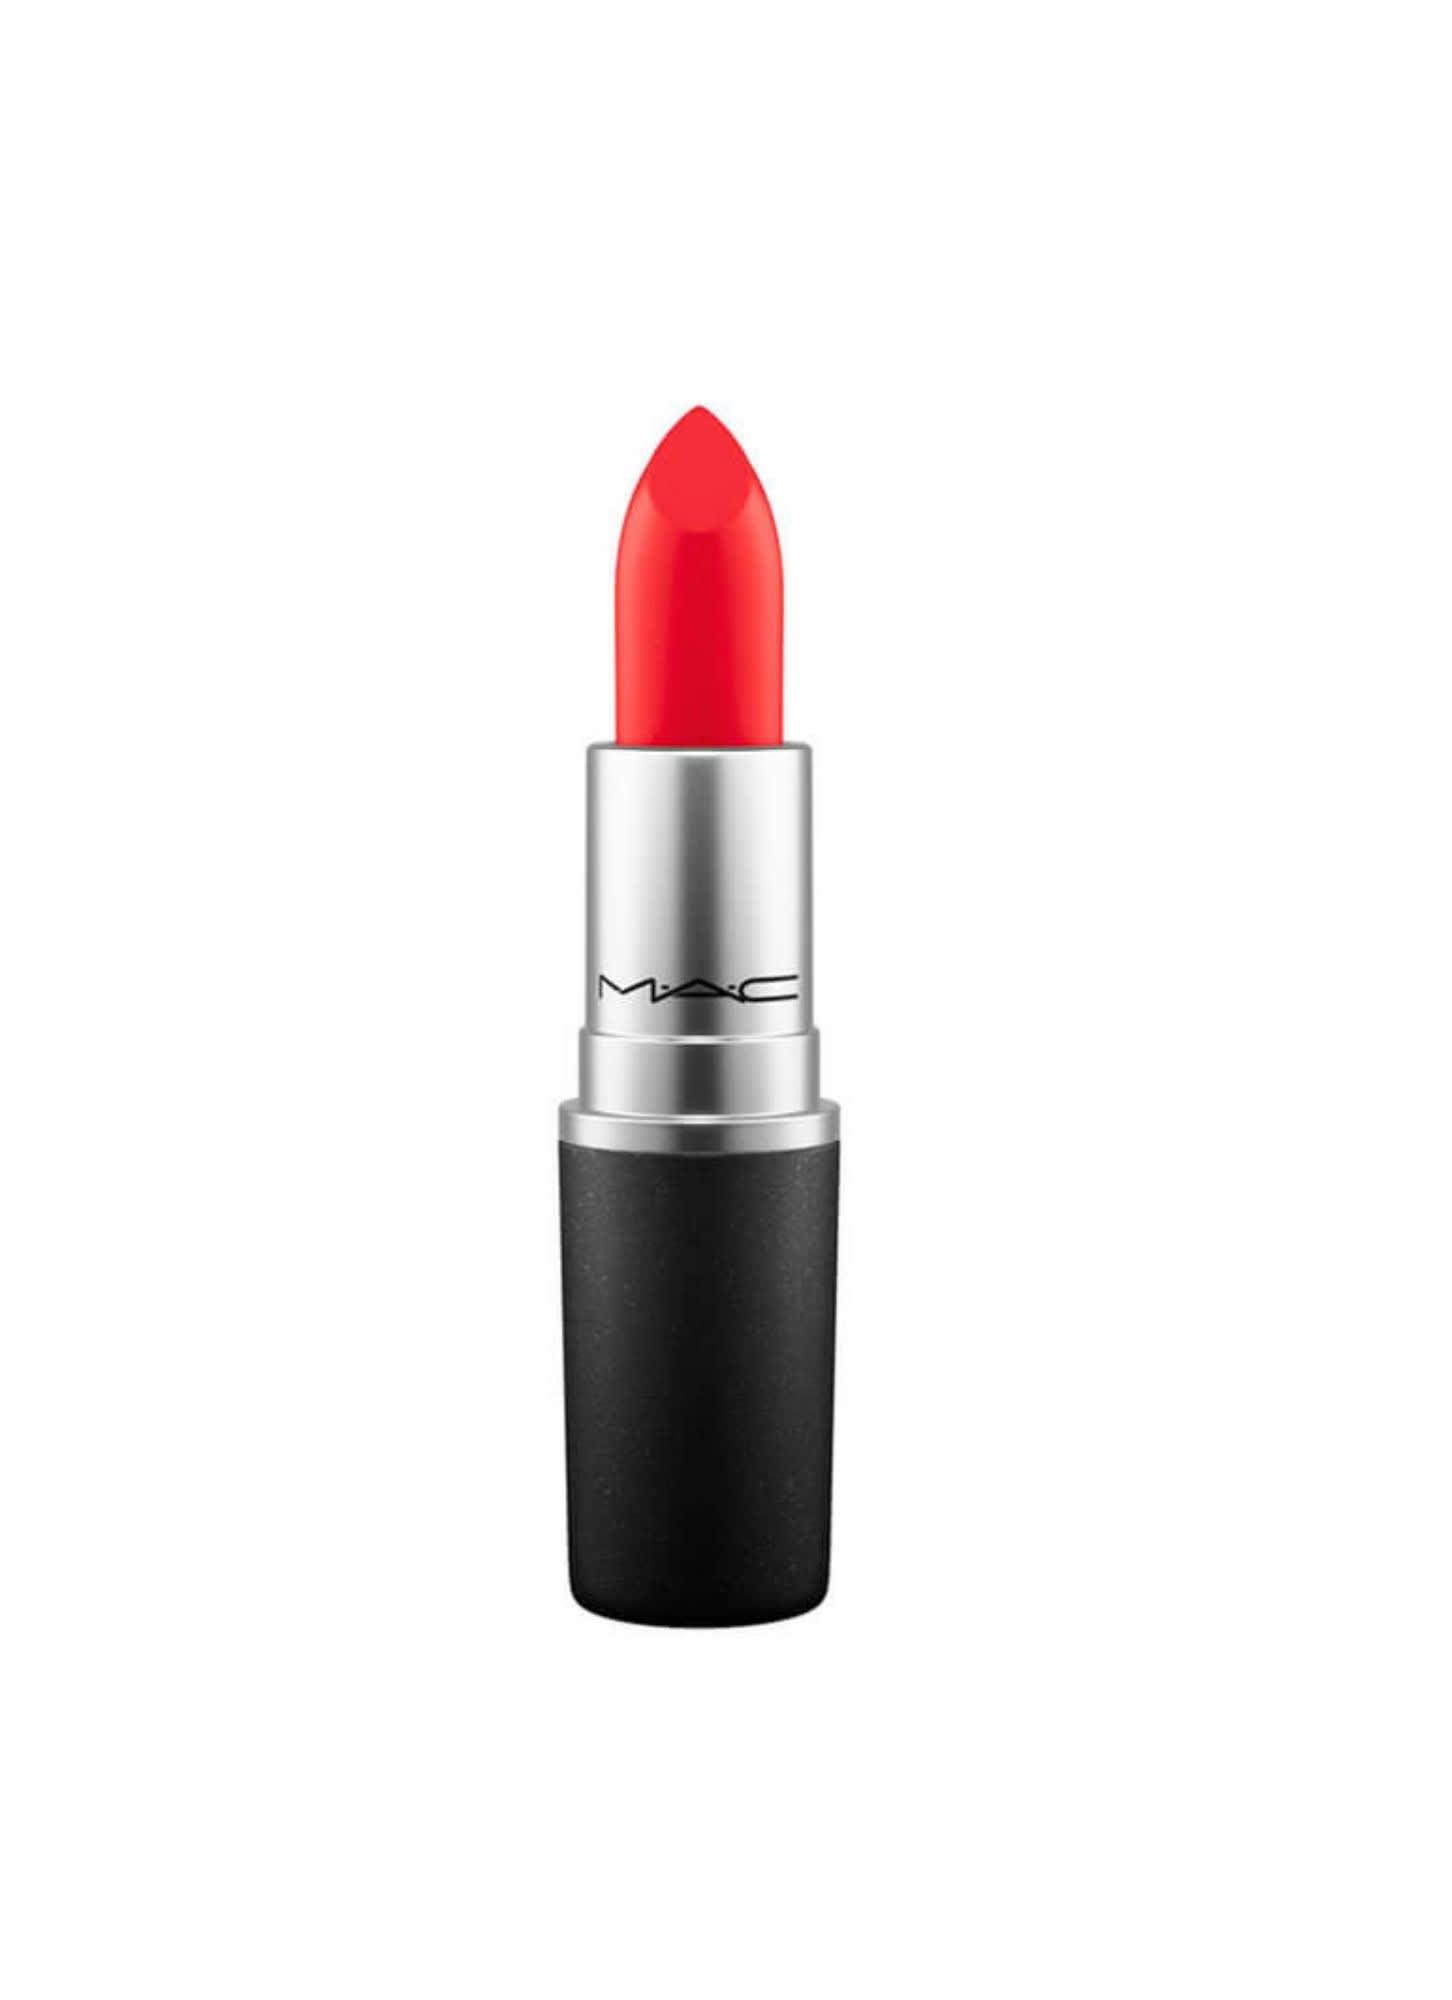 MAC Lipstick in "Lady Danger"